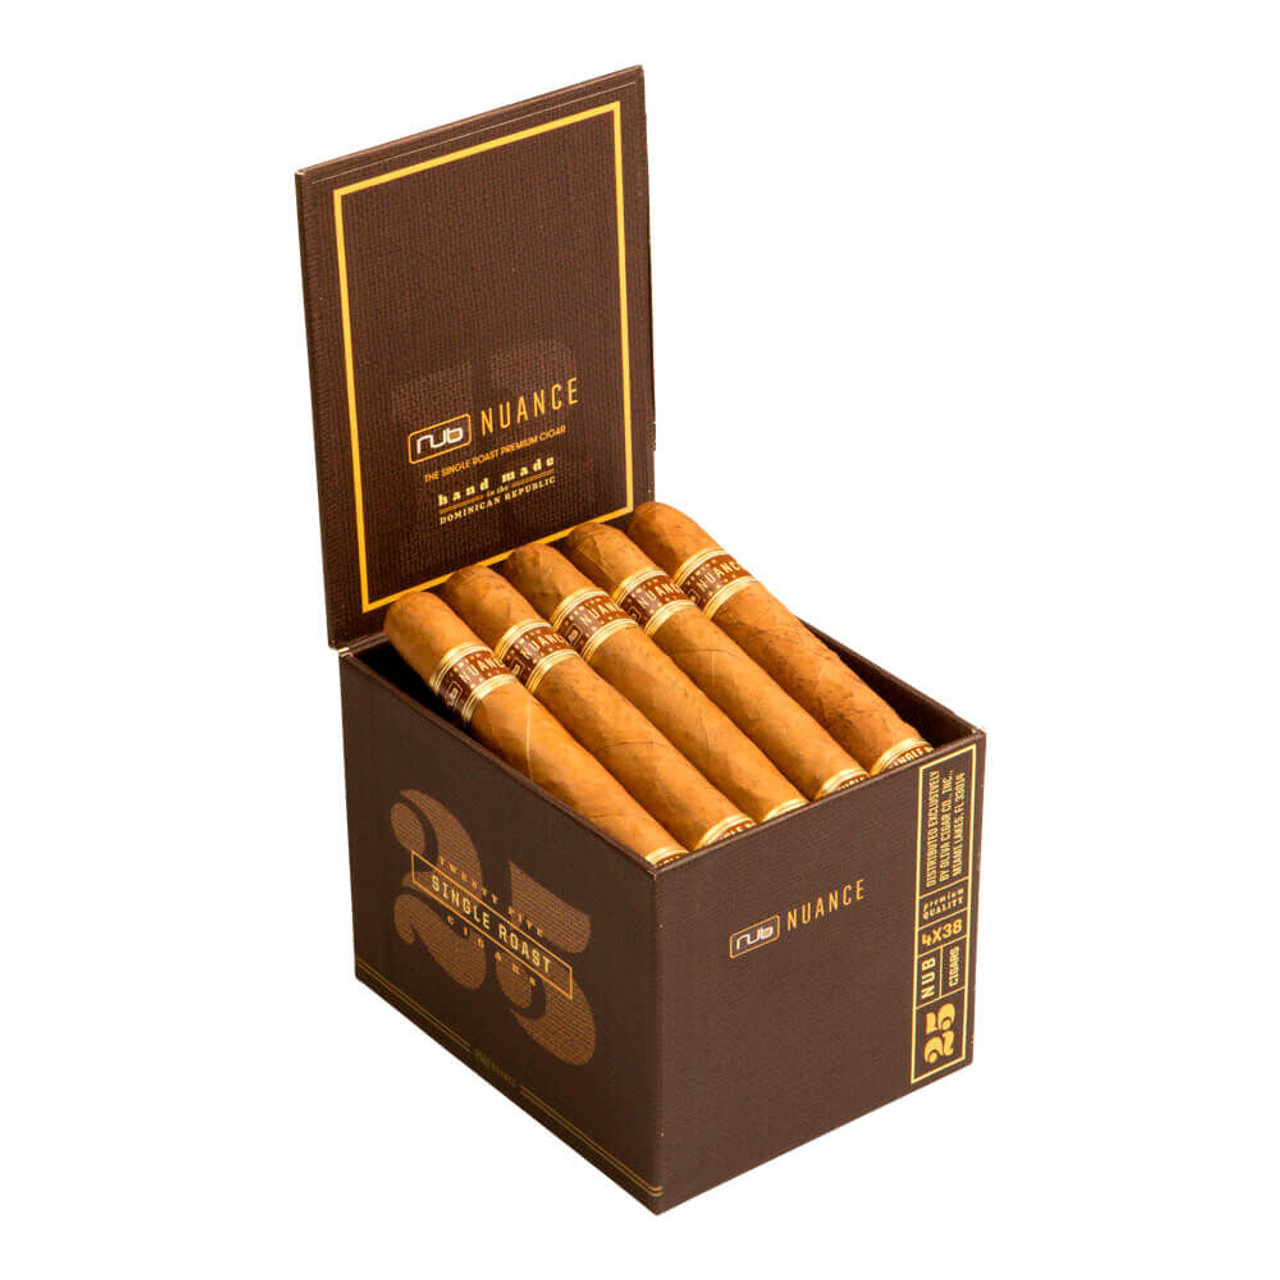 Nub Nuance Single Roast Cigars - 4 x 38 (Box of 25)